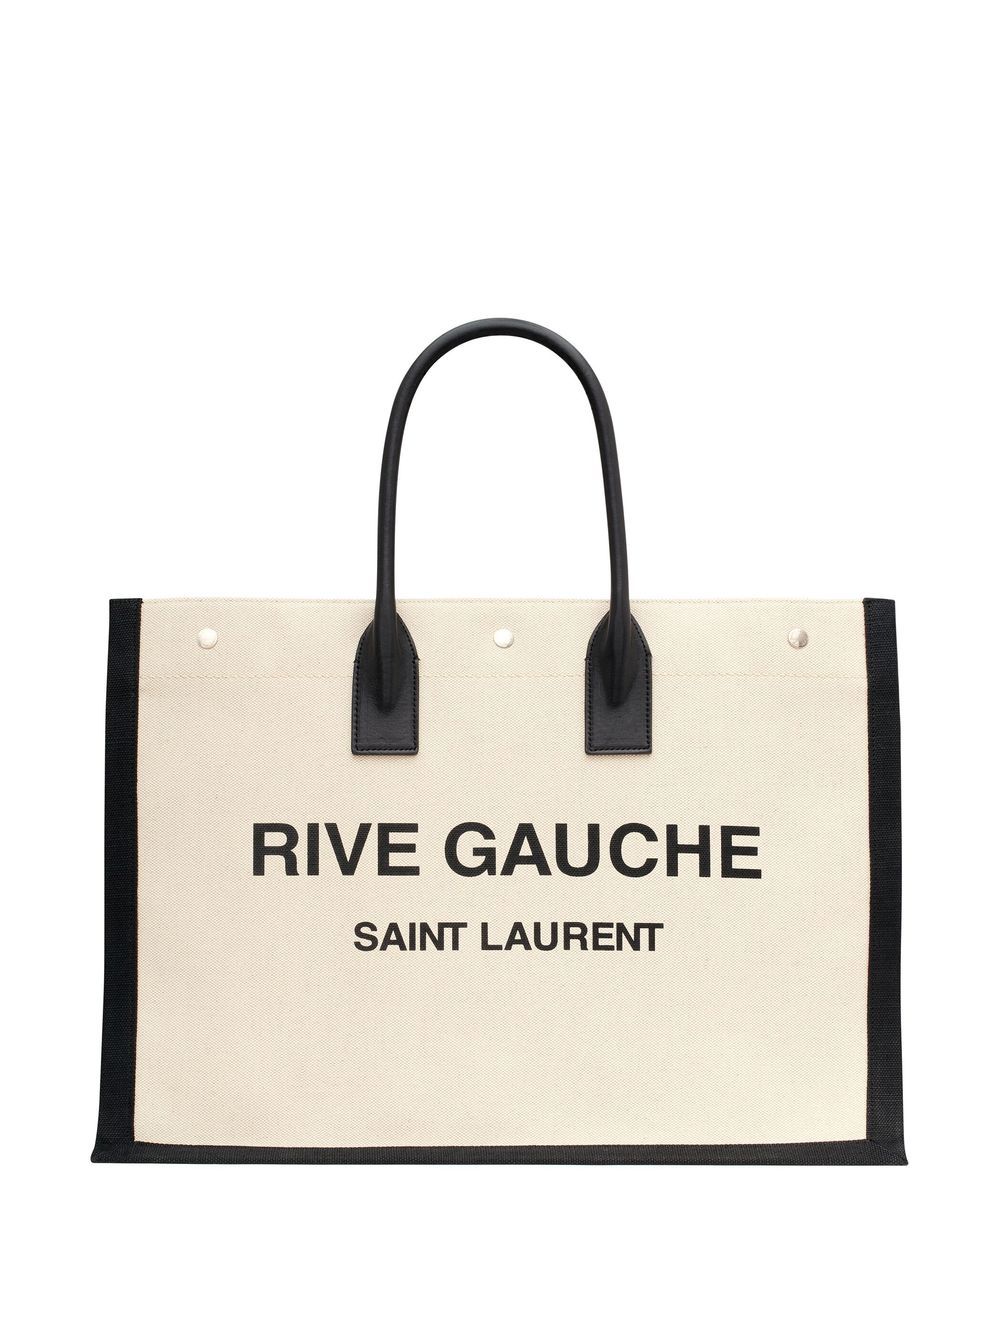 Saint Laurent Sac cabas beige Rive Gauche